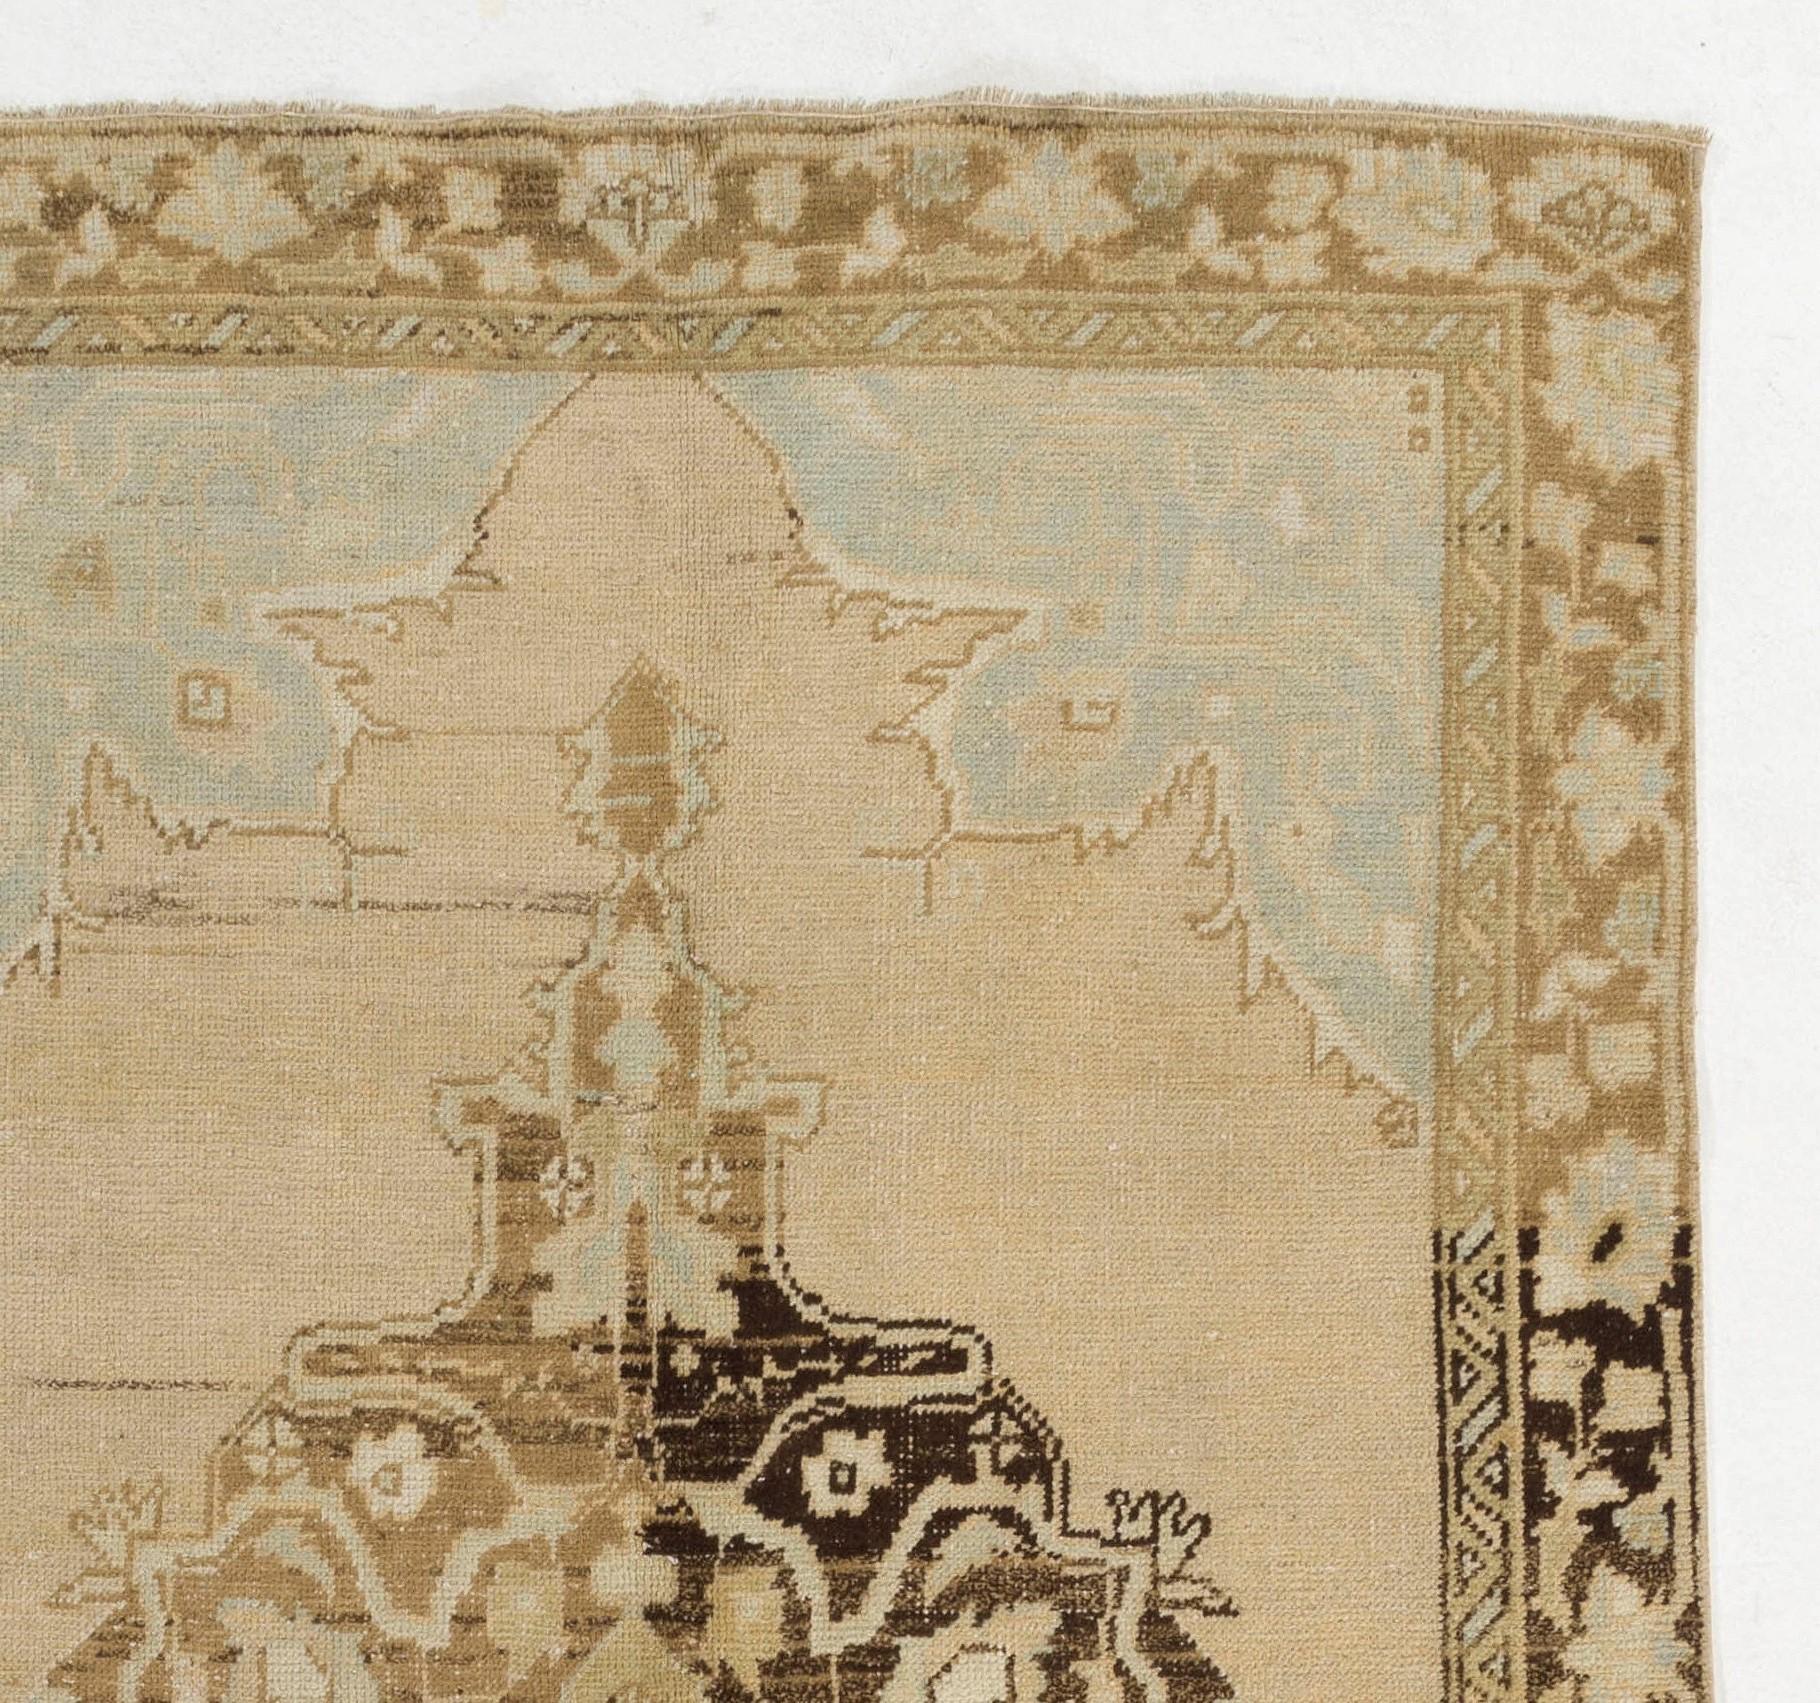 Ce tapis turc vintage finement noué à la main dans les années 1960 présente un élégant motif de médaillon. Mesures : 5 x 8.2 ft
Le tapis est fait de poils de laine moyens sur une base de laine. Il est lourd et repose à plat sur le sol, en très bon